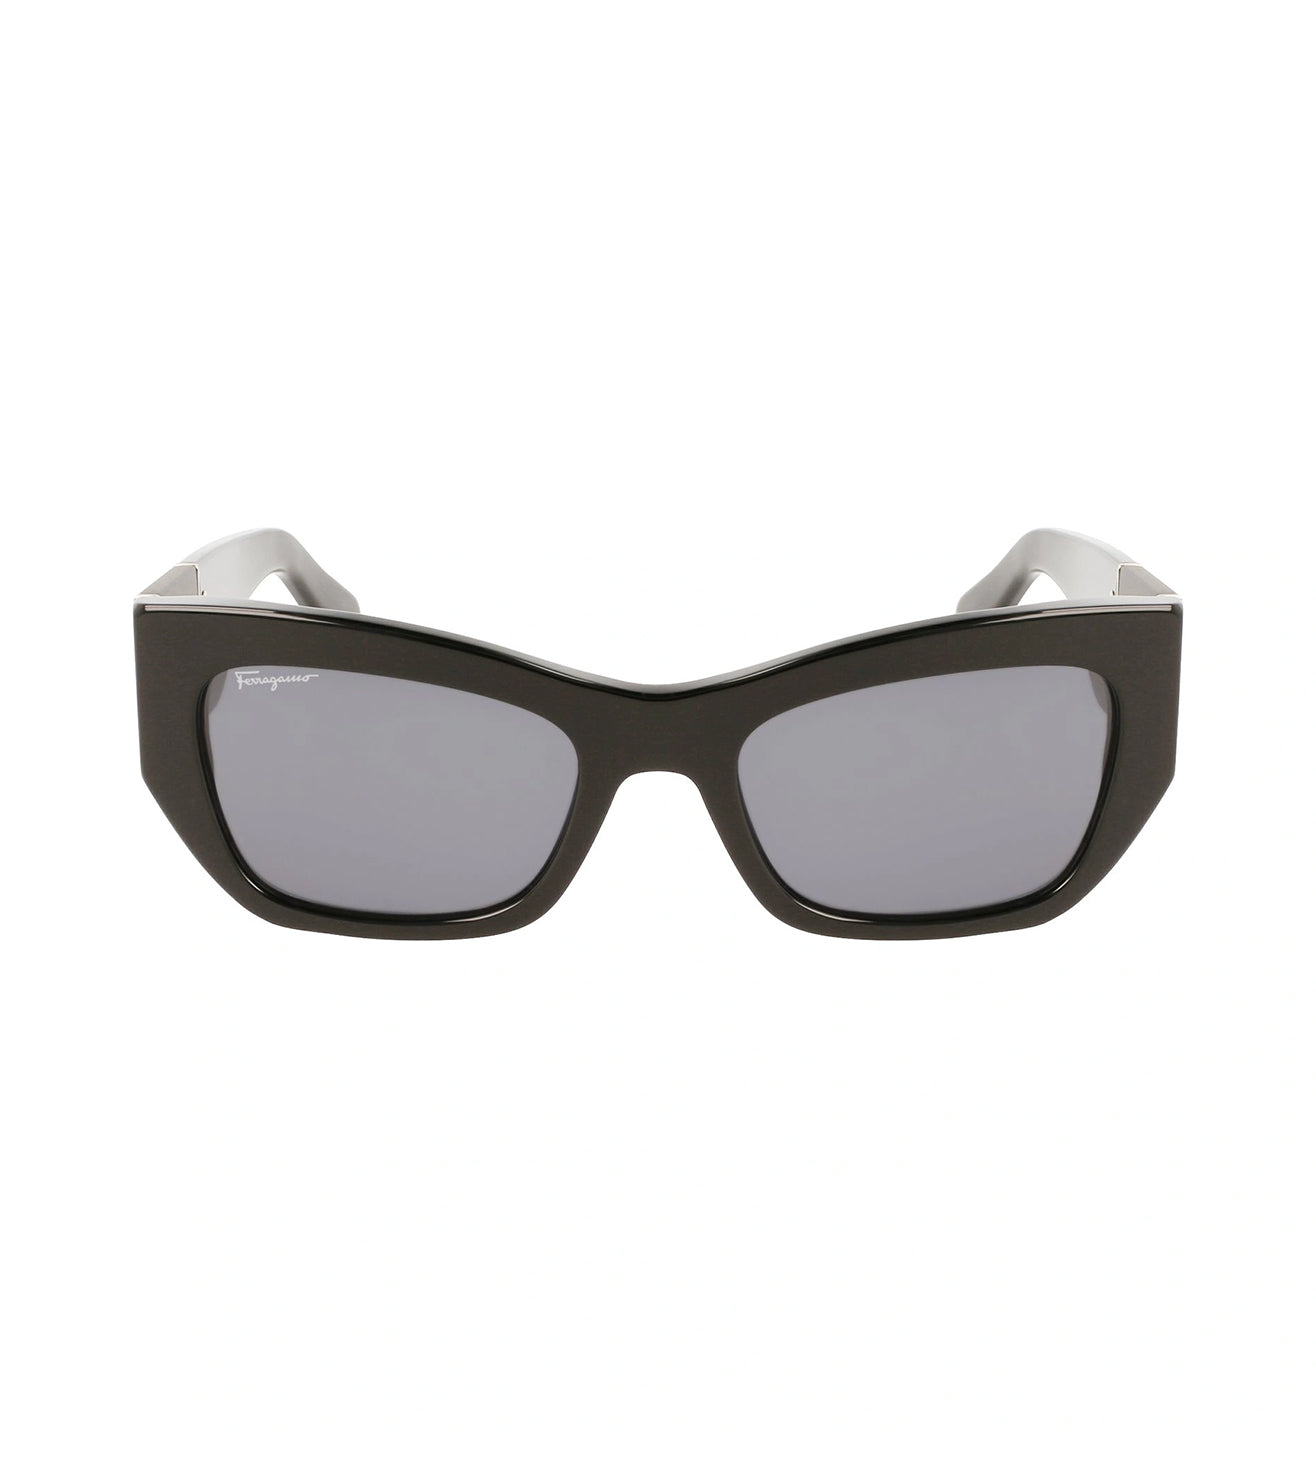 Salvatore Ferragamo Women's Grey Rectangular Sunglasses